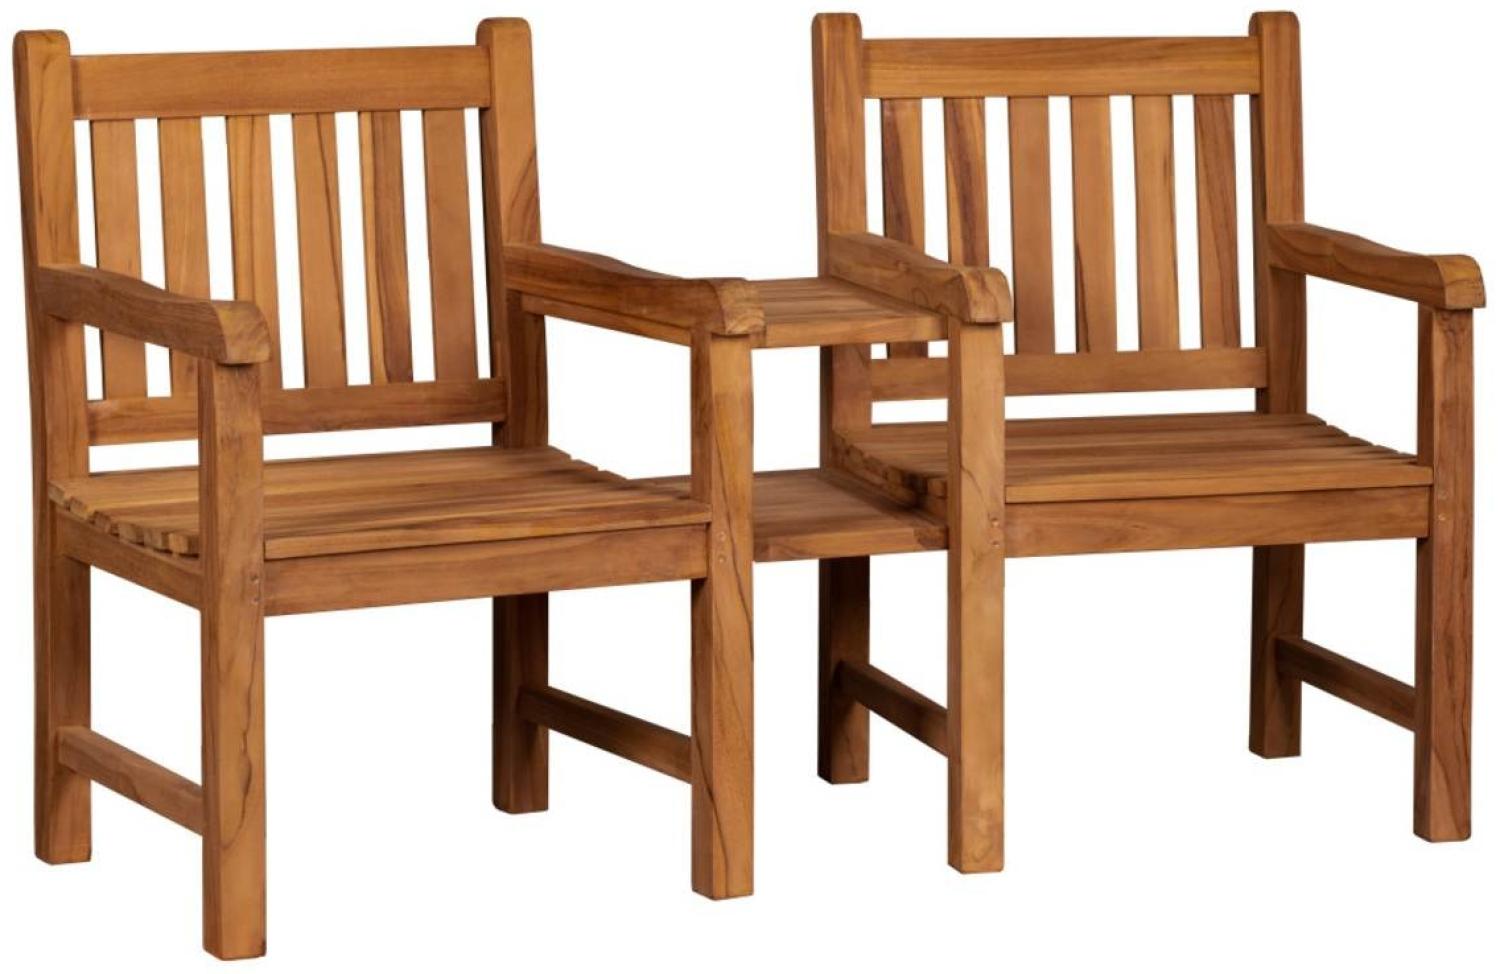 YOURSOL Flexi-Sitz Woodie mit Tisch, 2 Sitze, Breite 160 cm, Teak, witterungsbeständig, Gartenbank Bild 1